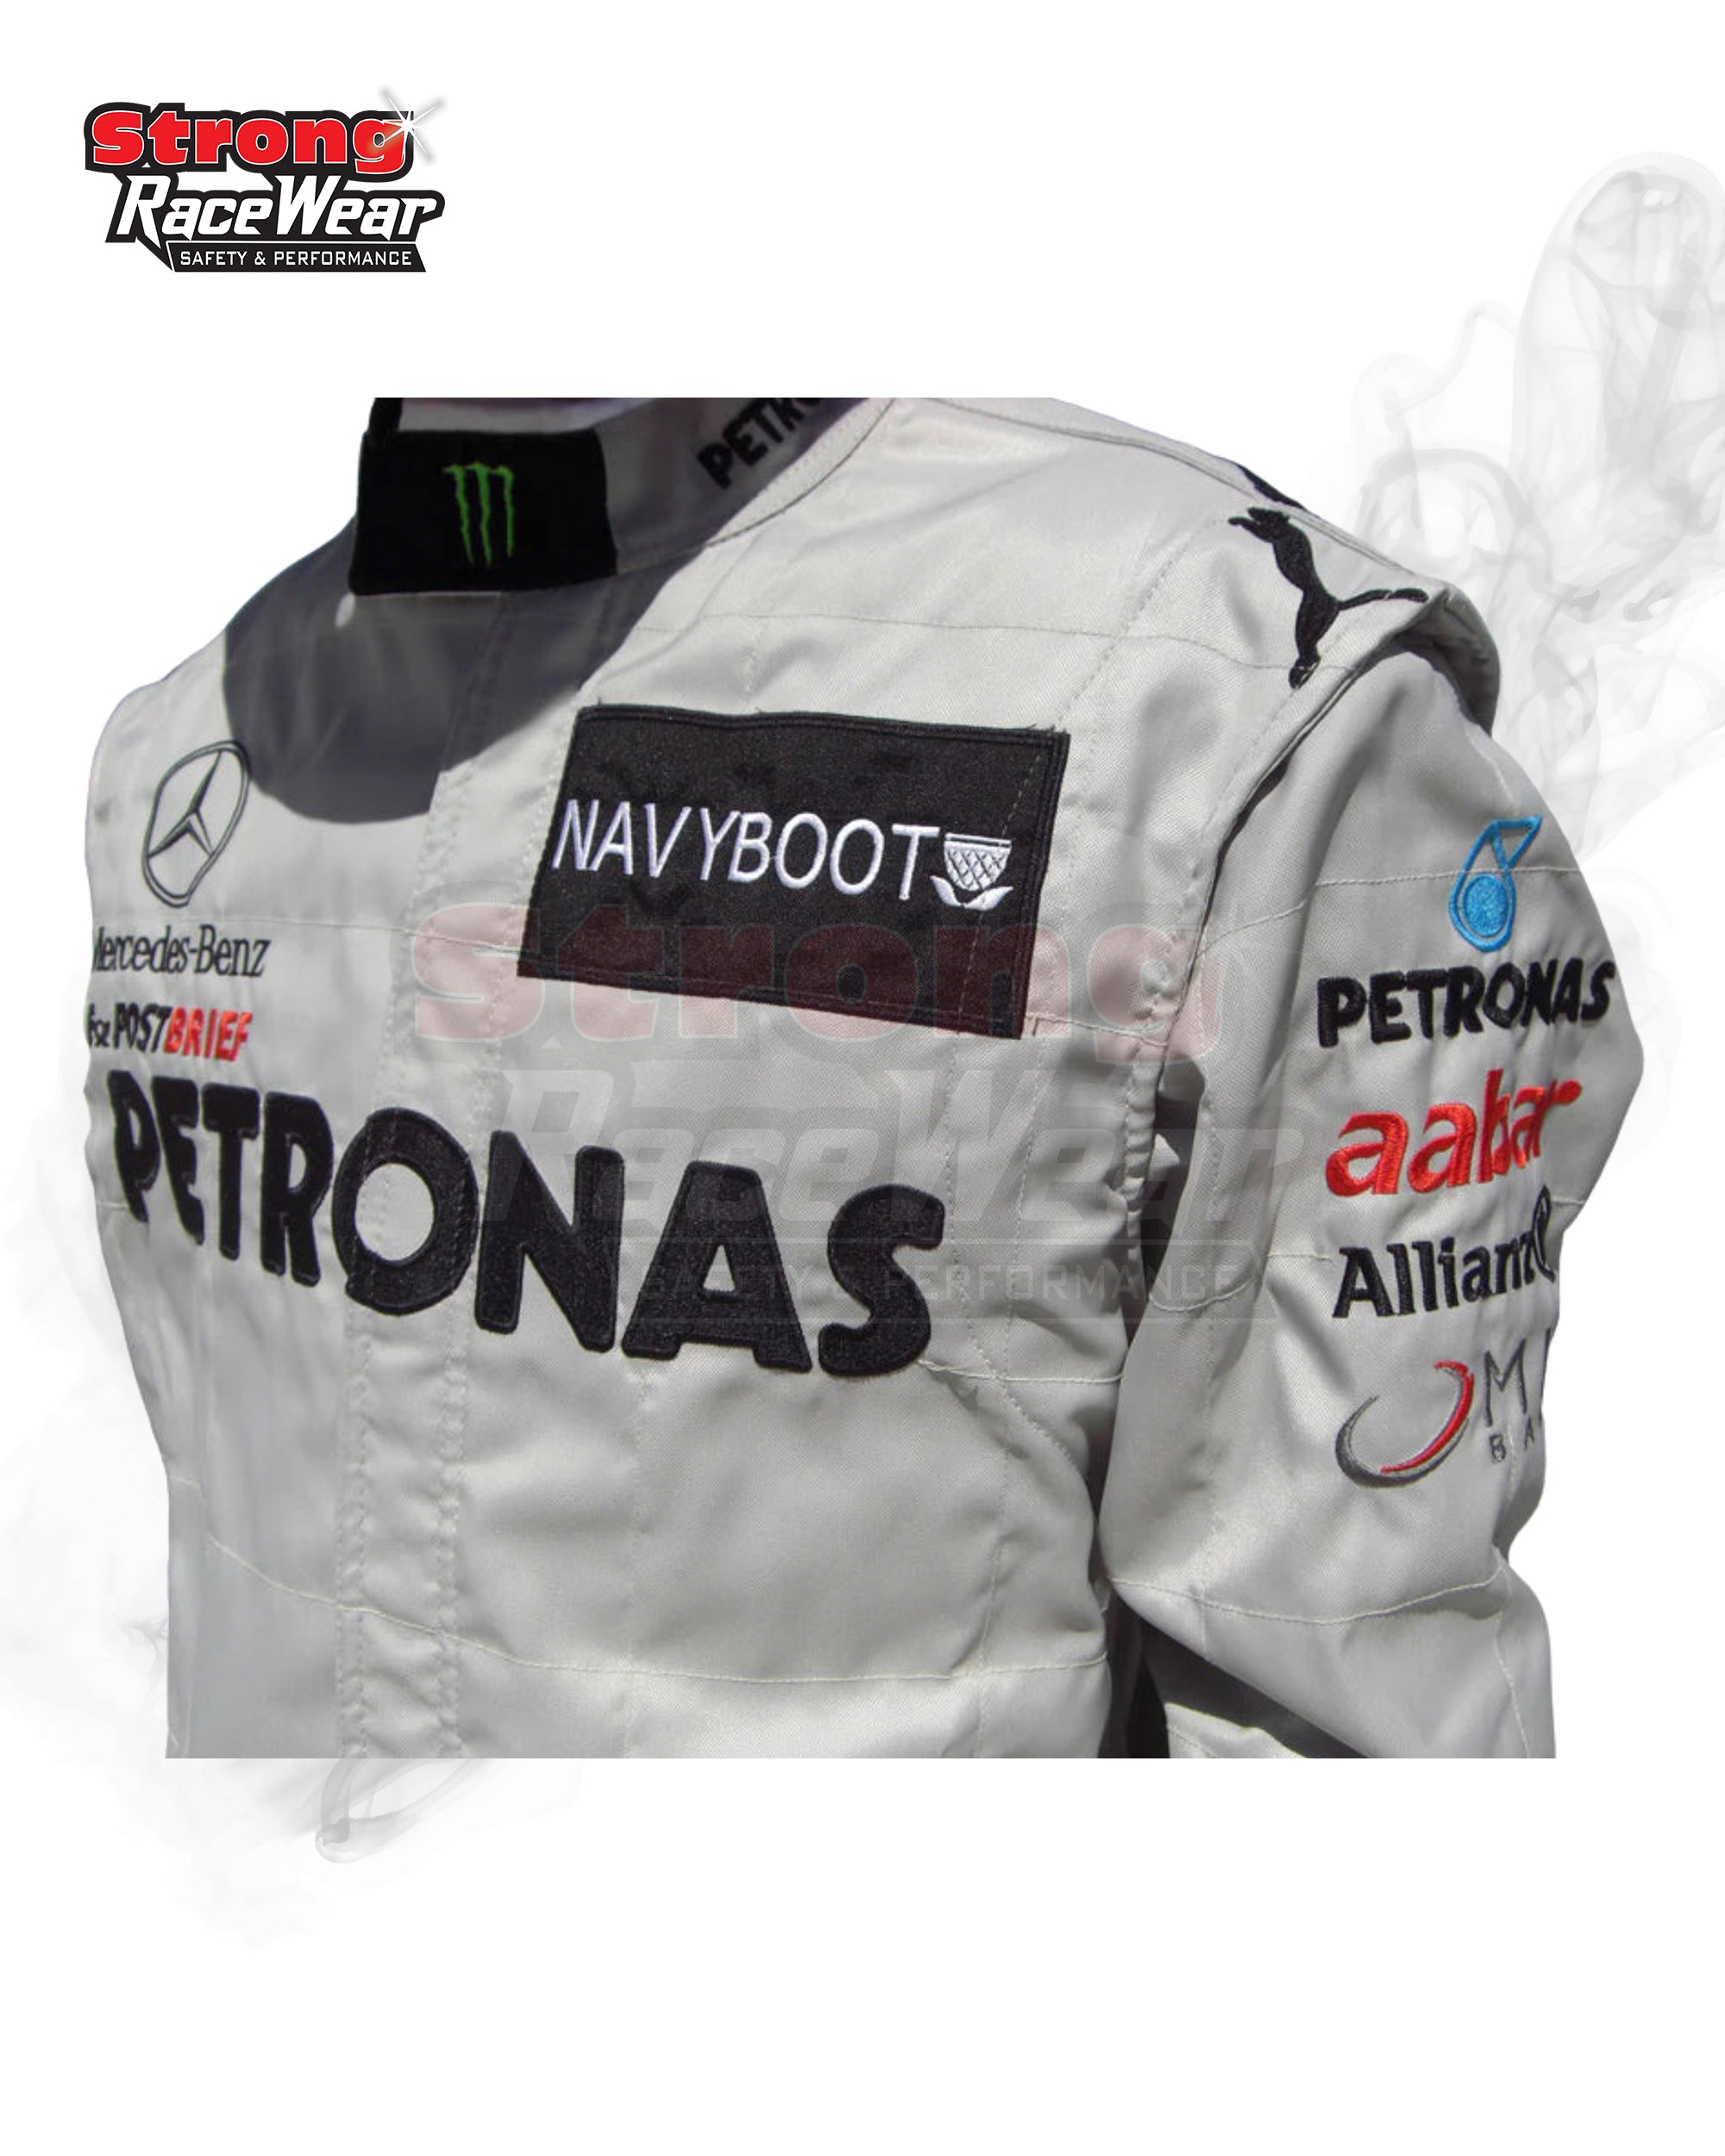 Michael Schumacher 2012 Mercedes Benz F1 Race Suit